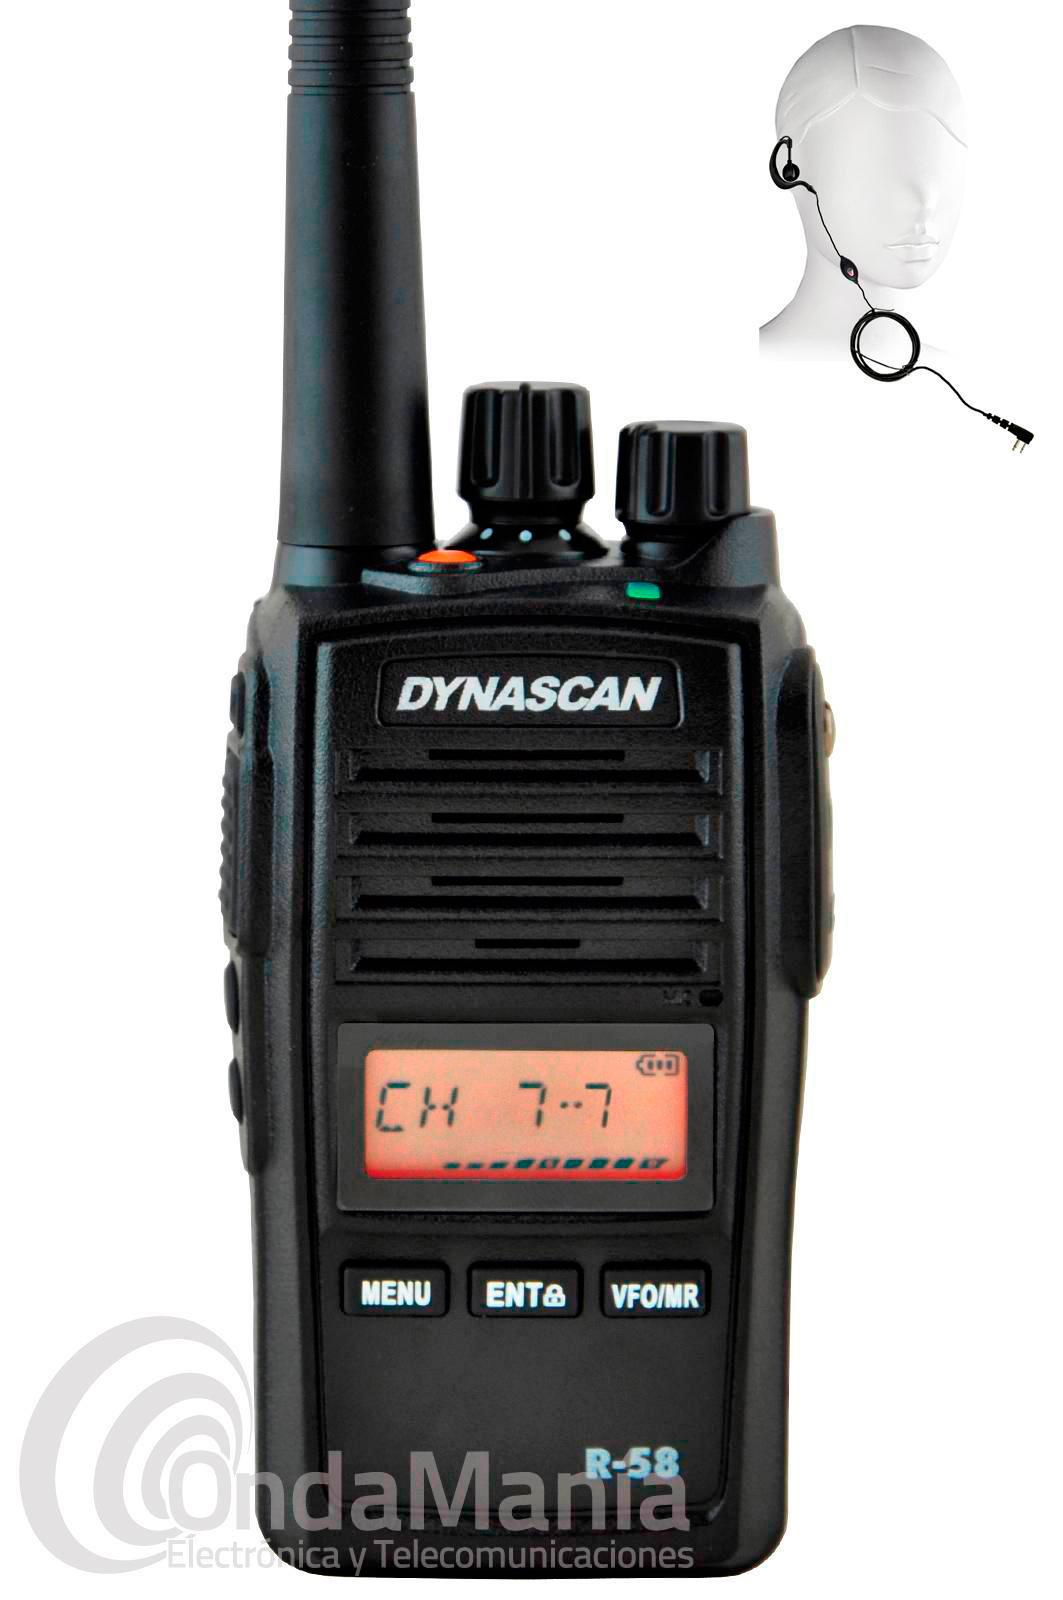 DYNASCAN R-58 WALKY PMR DE USO LIBRE DE UHF CON 8 CANALES + 91  PRESINTONIZADOS, DYNASCAN, MIDLAND